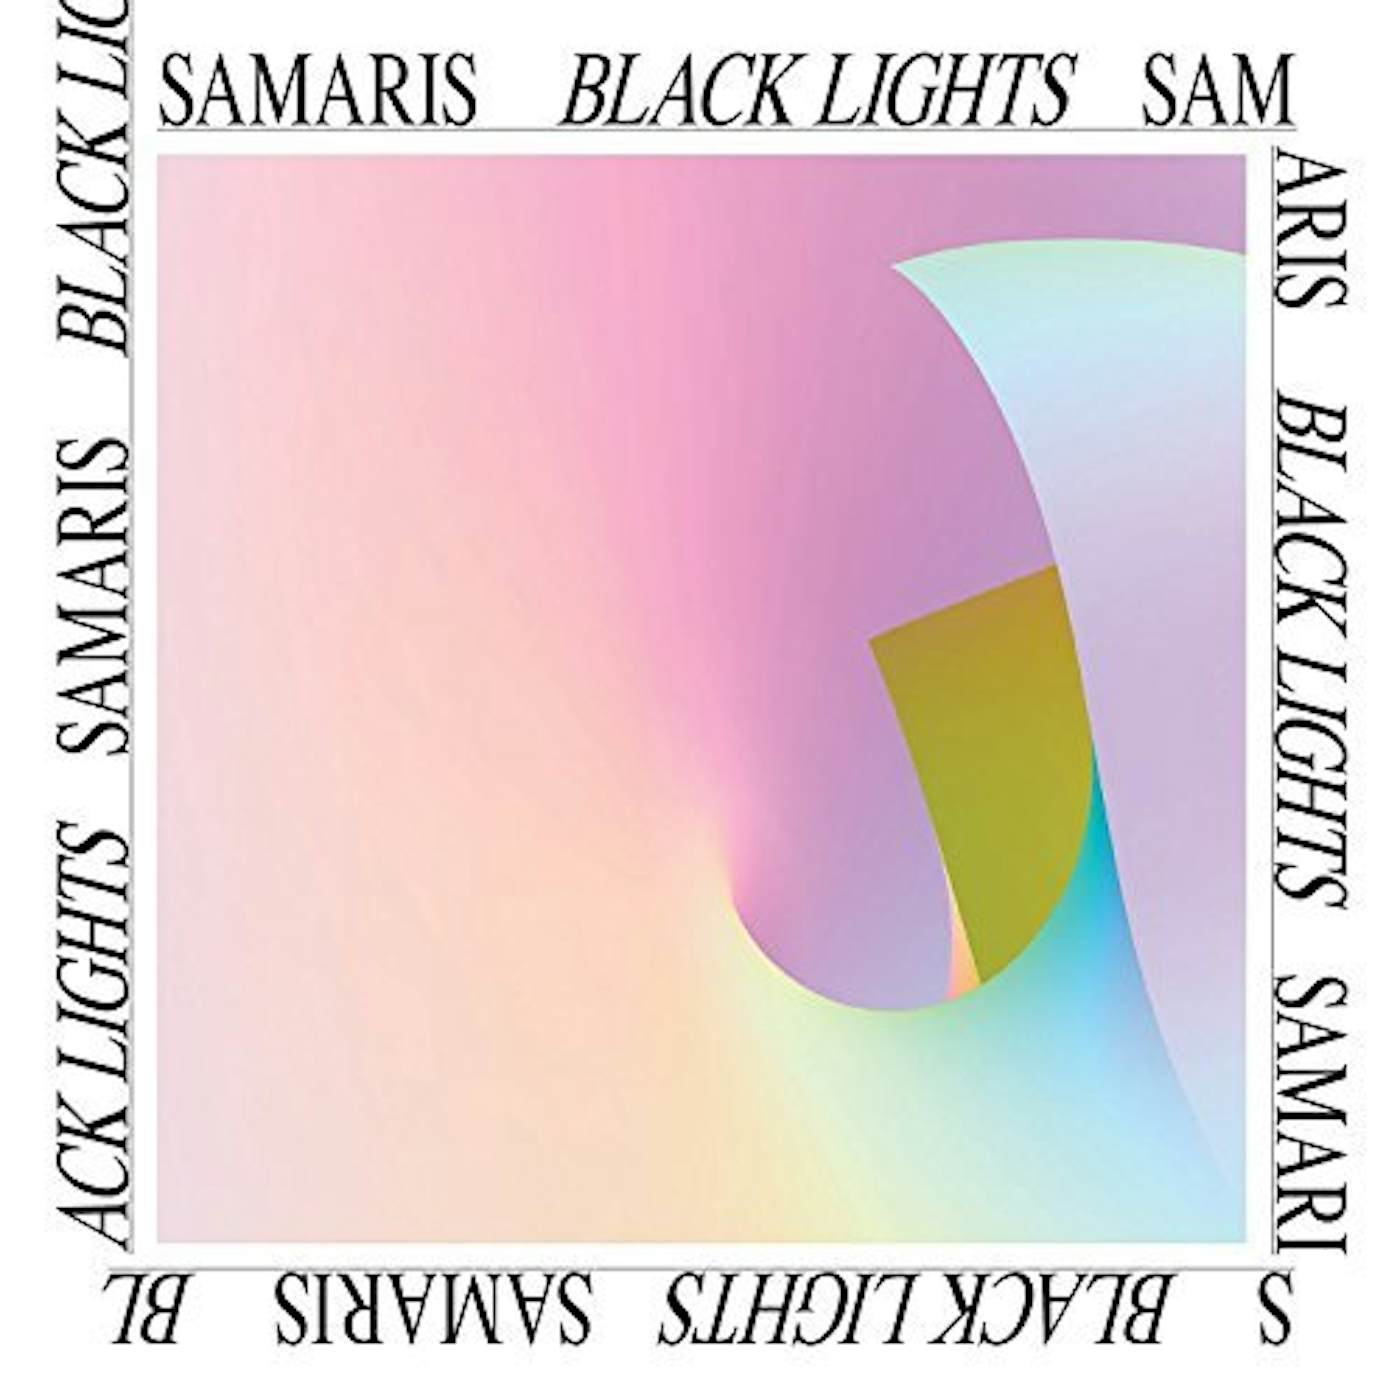 Samaris Black Lights Vinyl Record